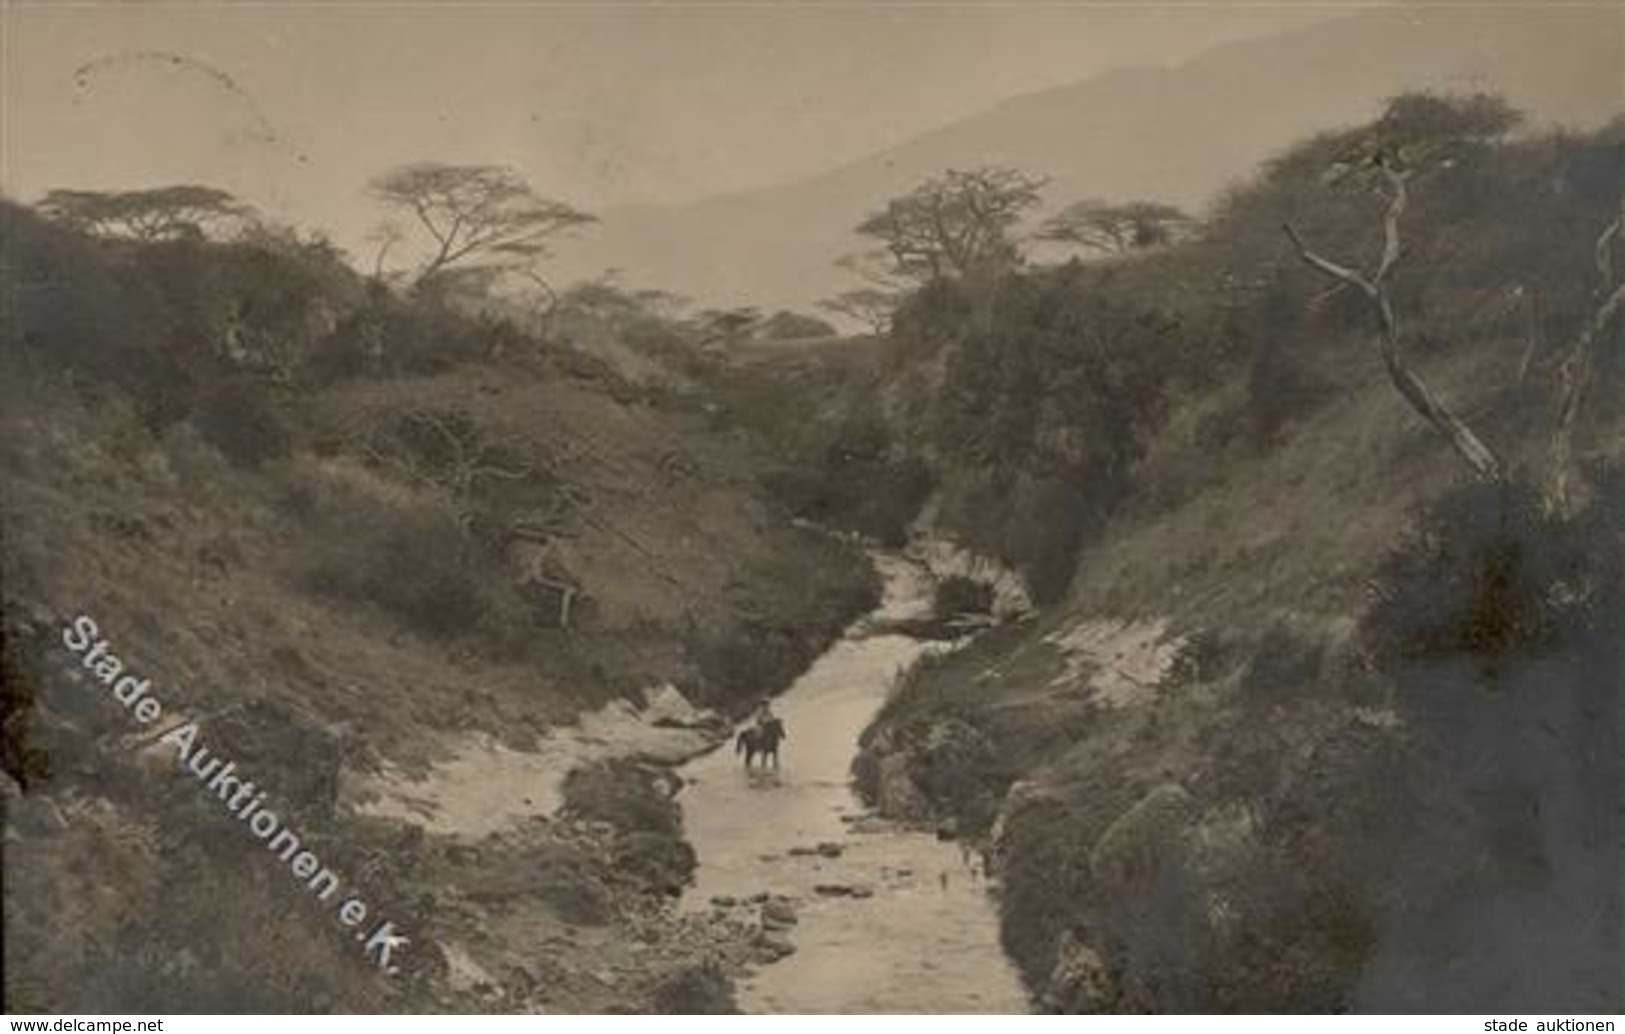 Kolonien Deutsch Ostafrika Ritt Am Weru-Weru Foto AK 1913 I-II Colonies - History